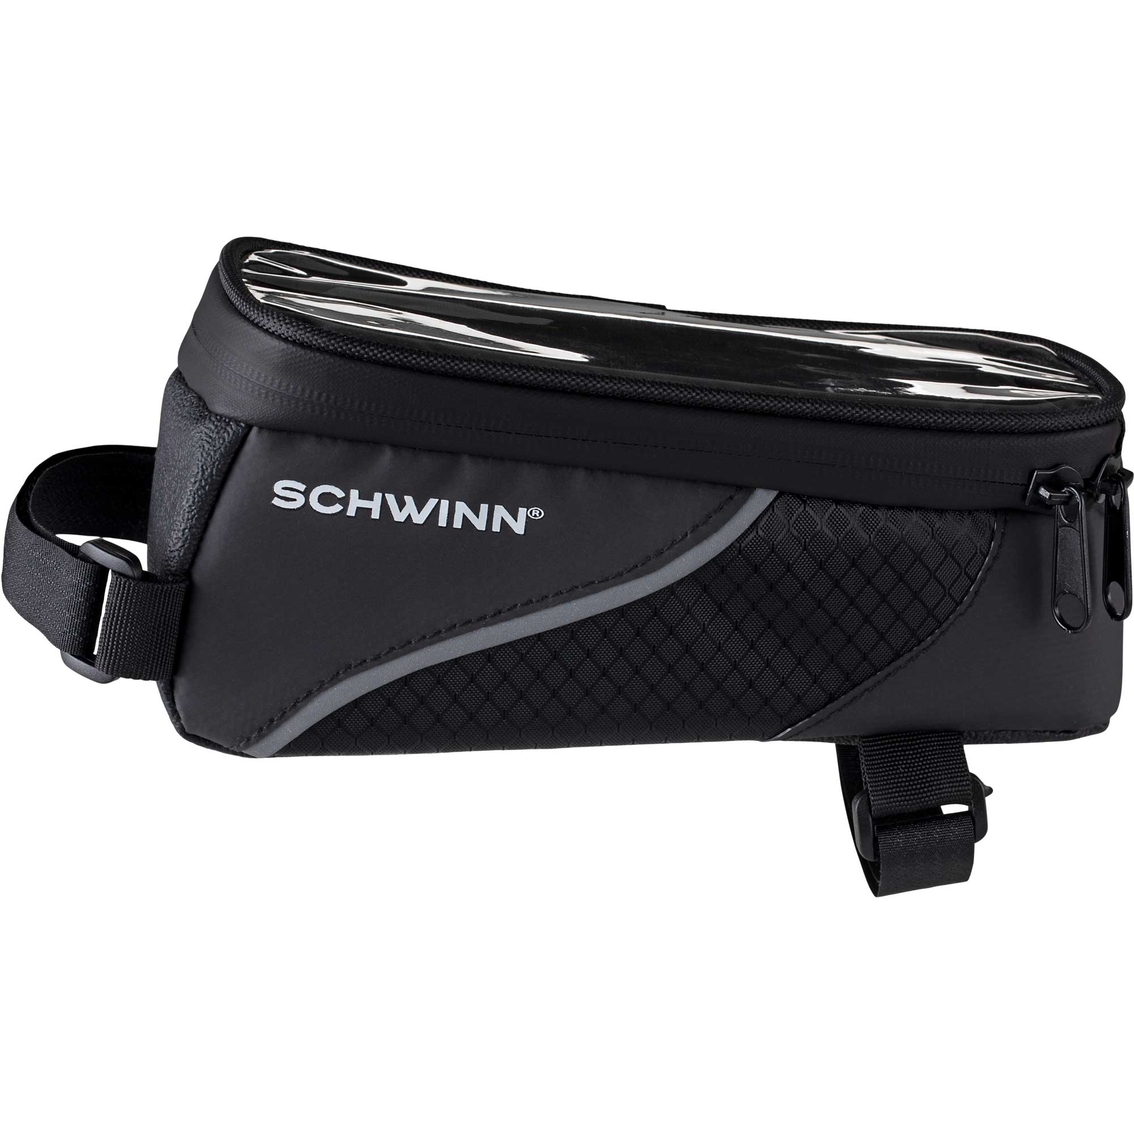 Schwinn Smart Phone Top Tube Bike Bag - Image 2 of 4